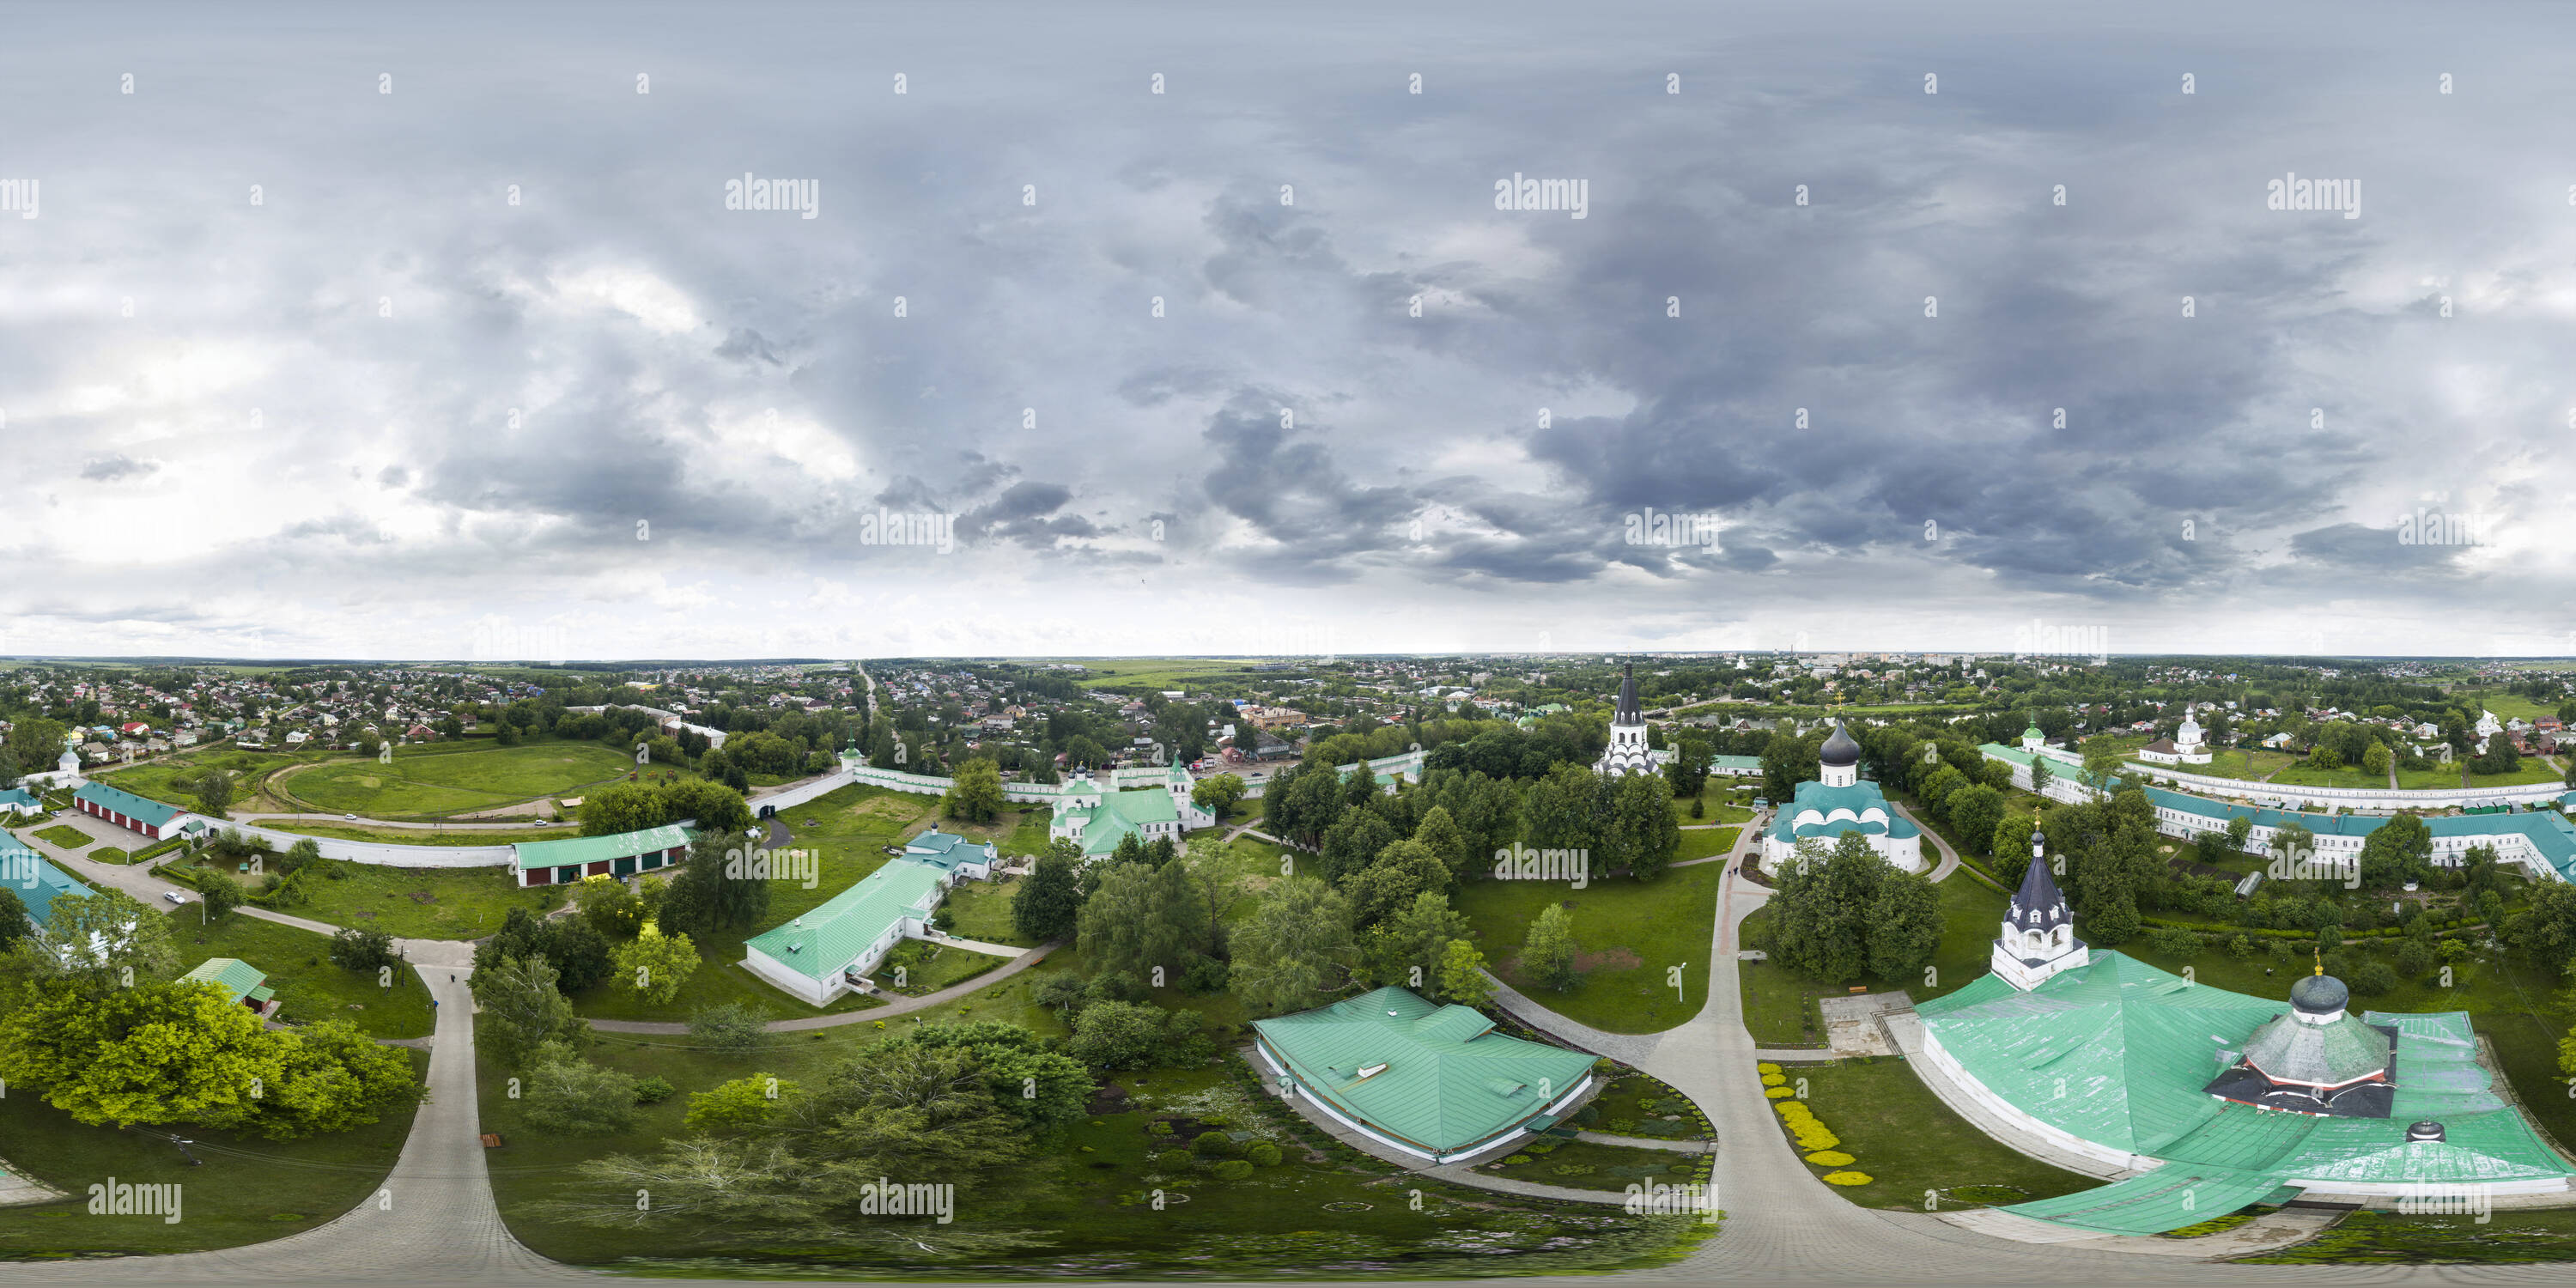 Visualizzazione panoramica a 360 gradi di Cremlino Alexandrob2